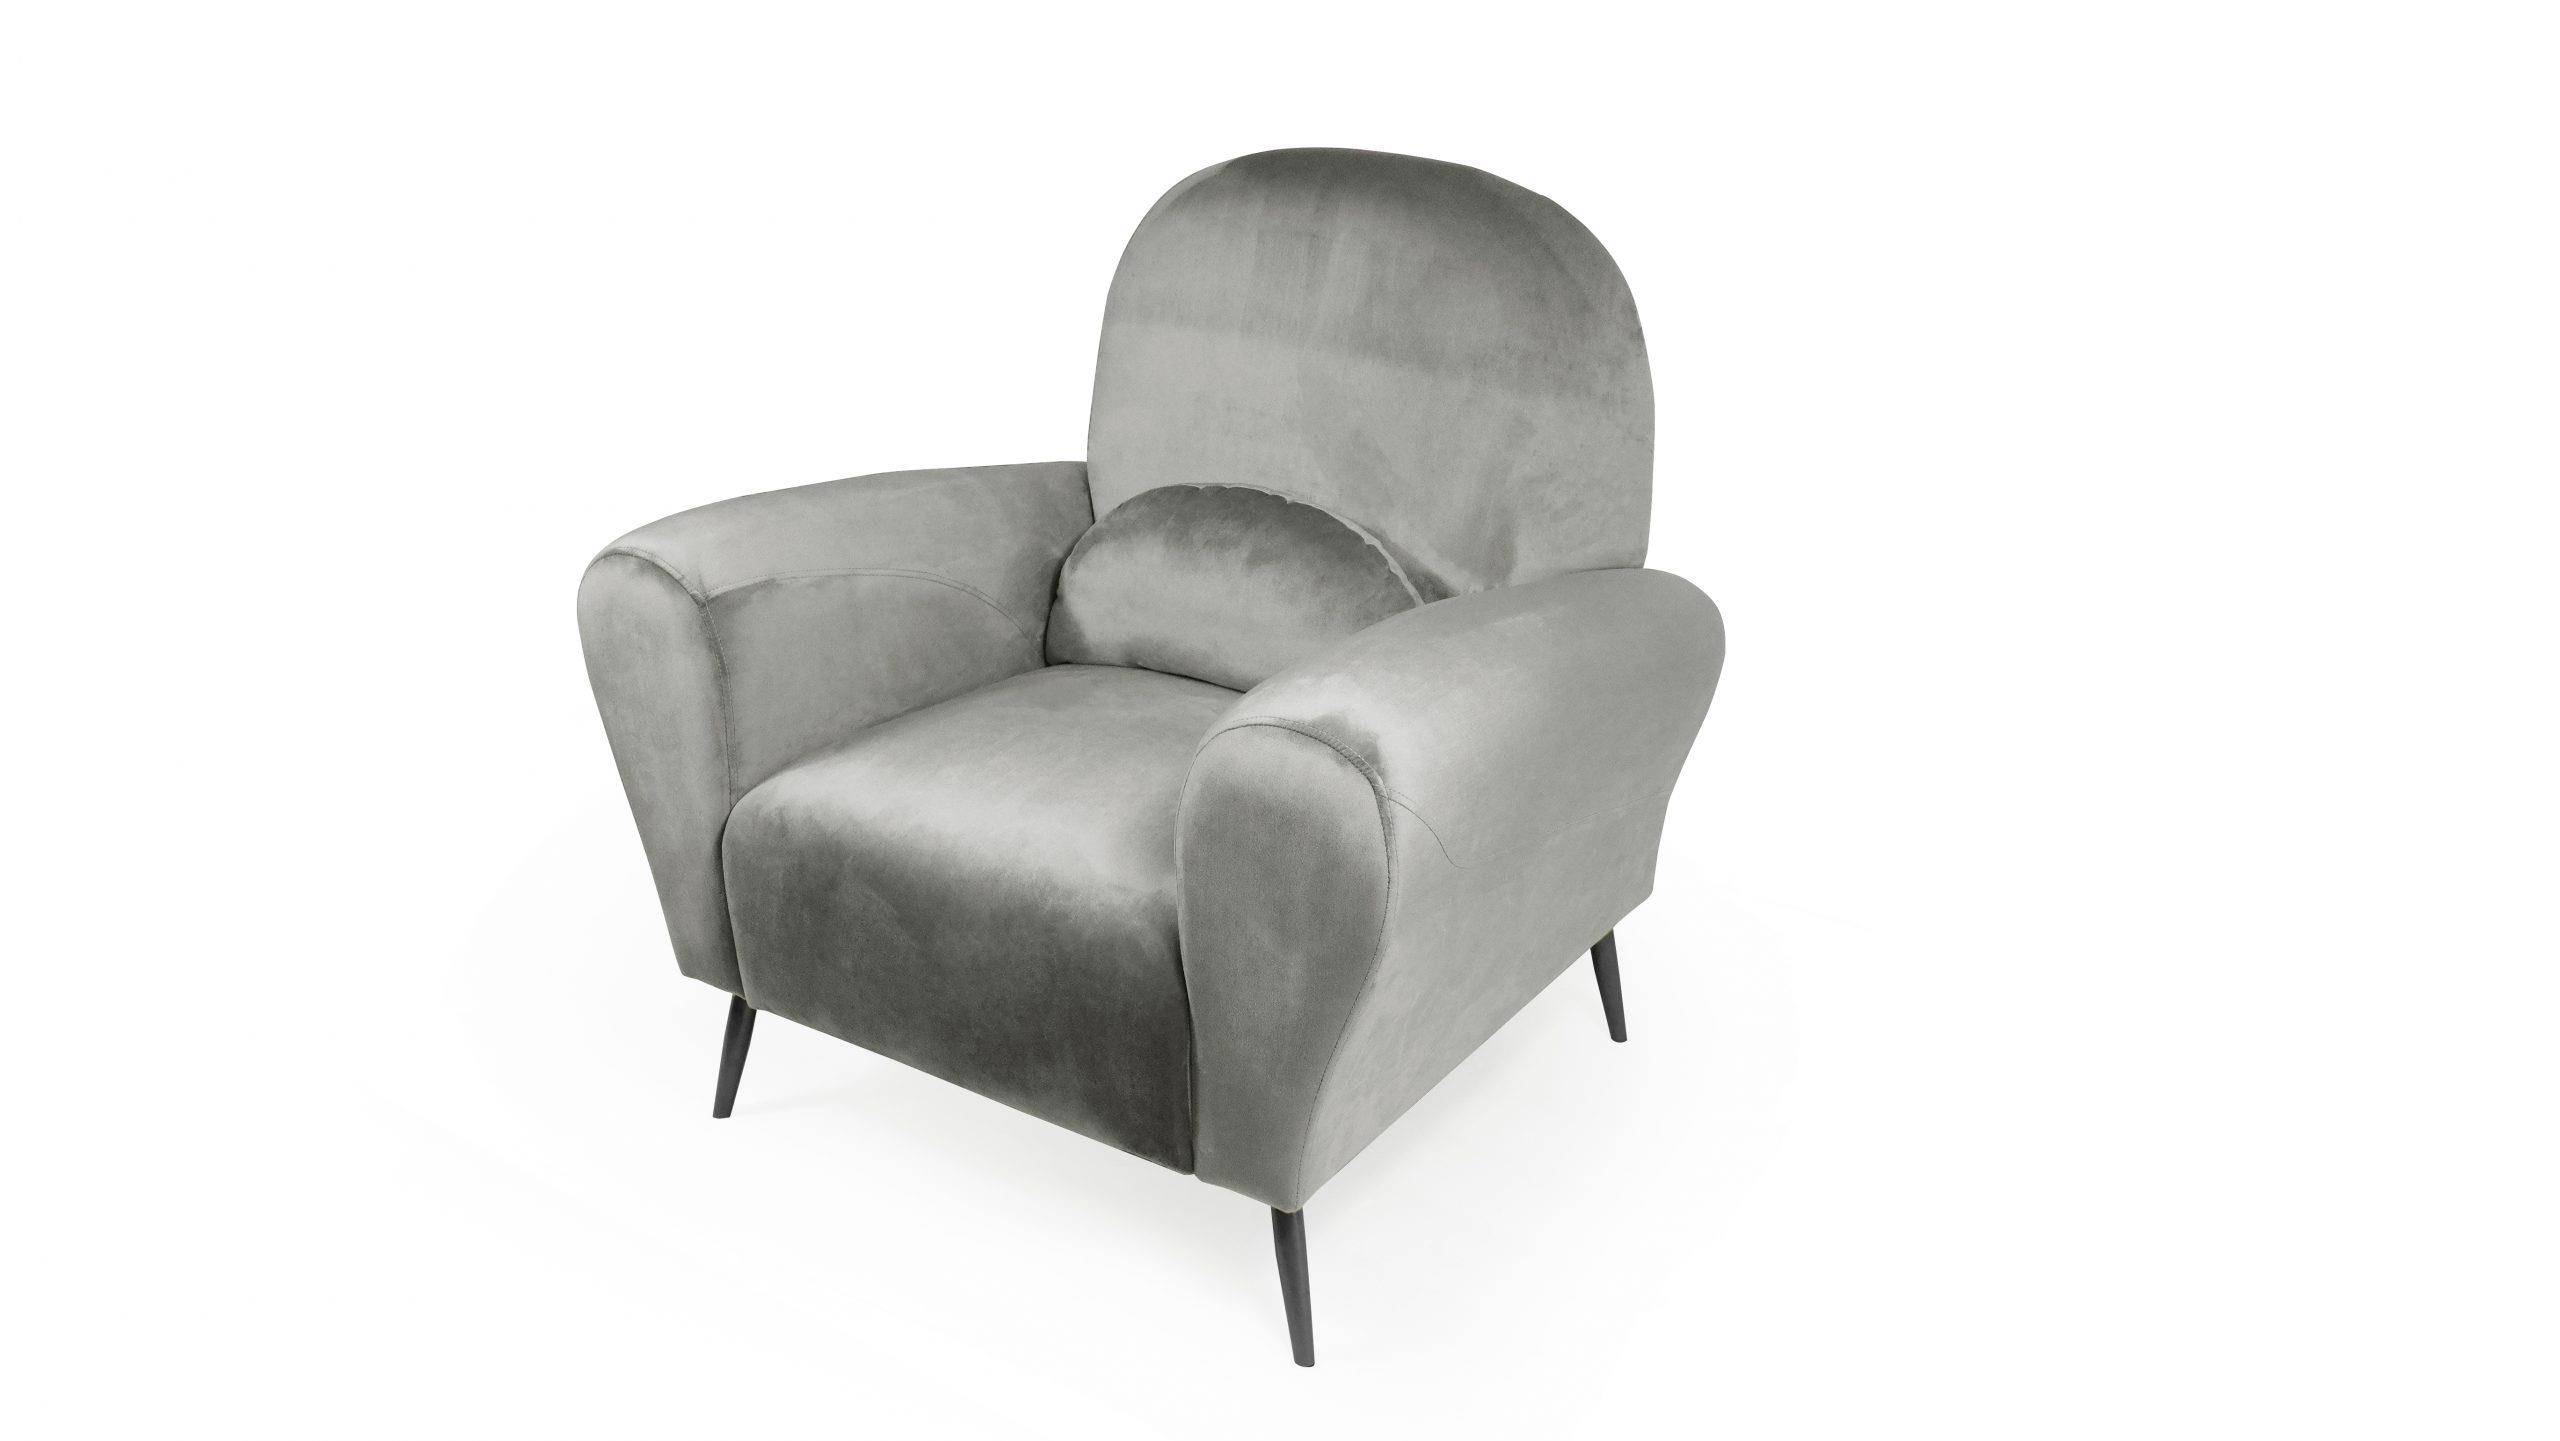 כורסא לבית מעוצבת דגם בלגיה אפור